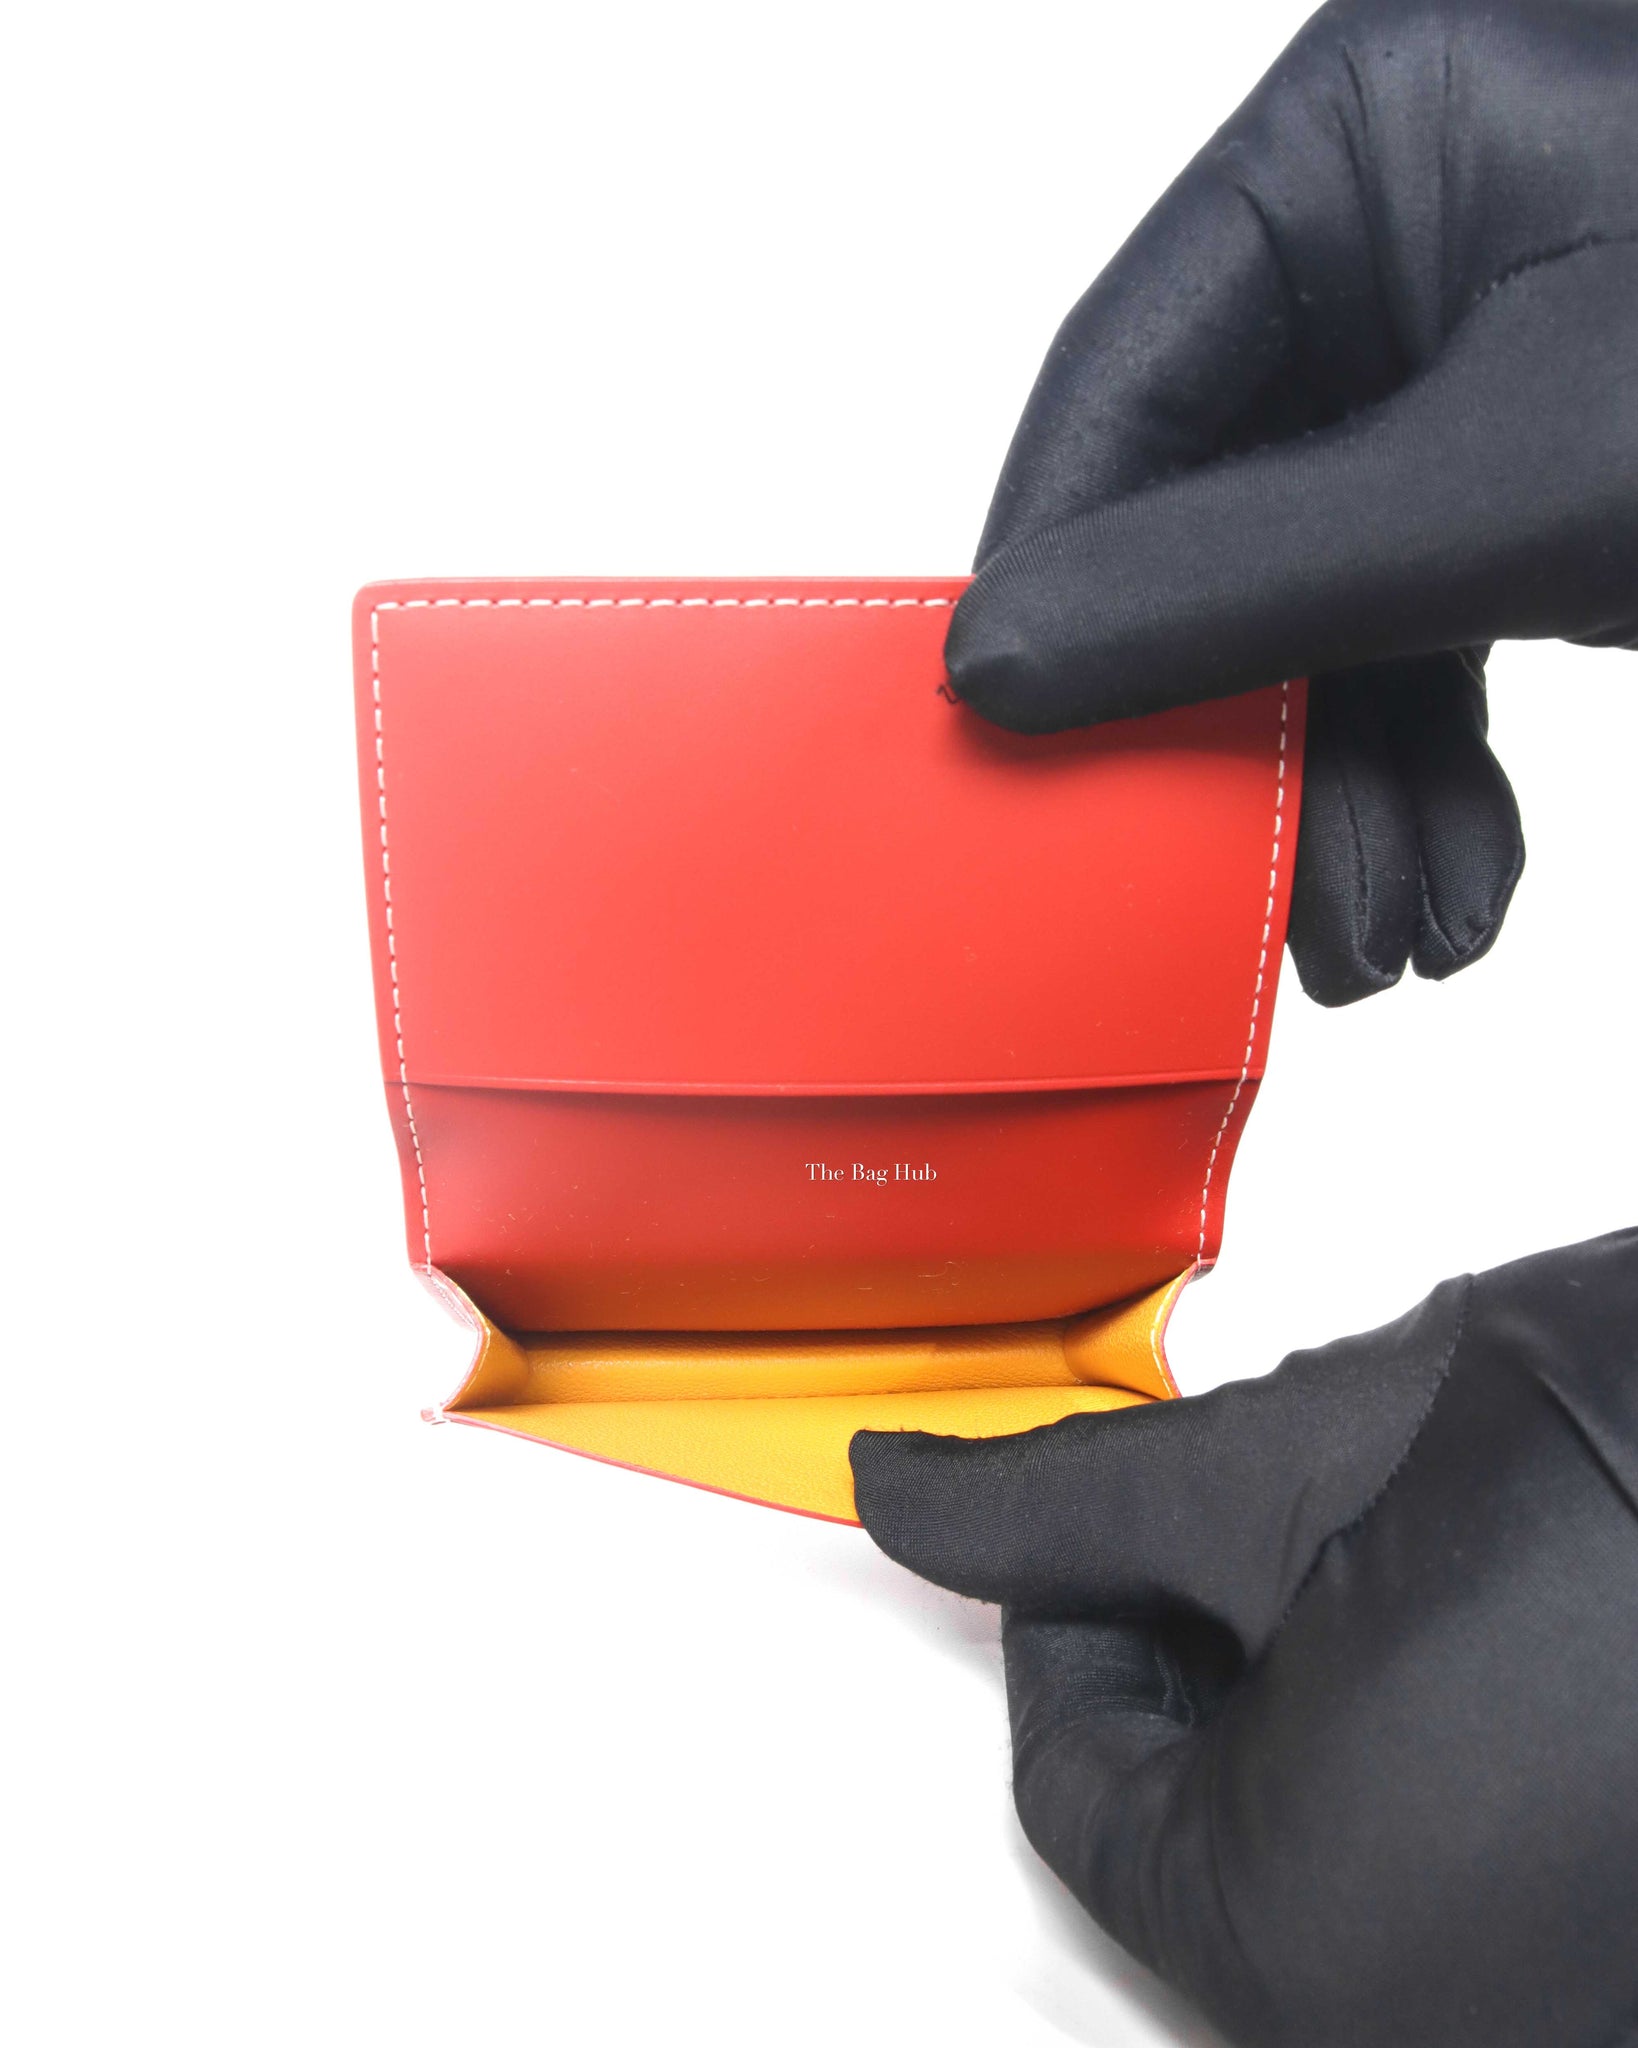 Wallet Goyard Red in Not specified - 25492048